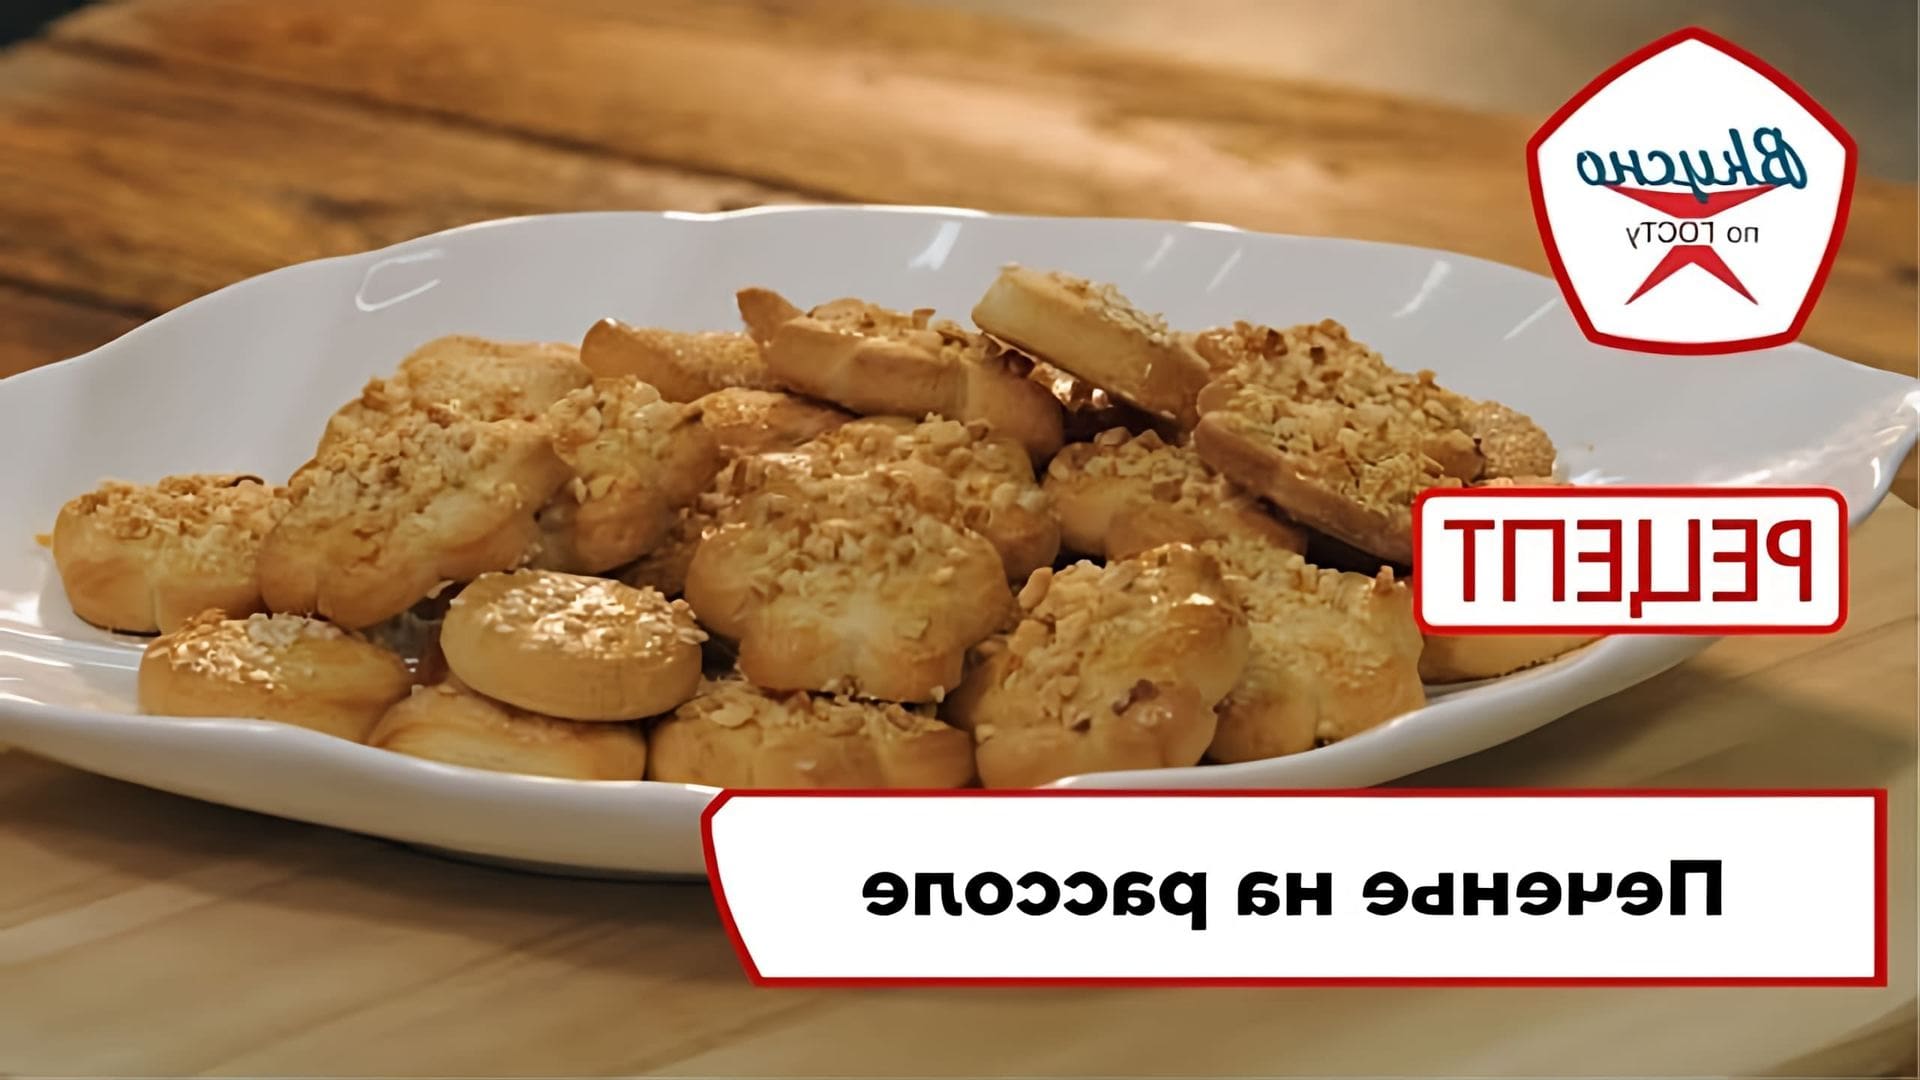 В этом видео демонстрируется рецепт печенья на рассоле, который был популярен во времена дефицита